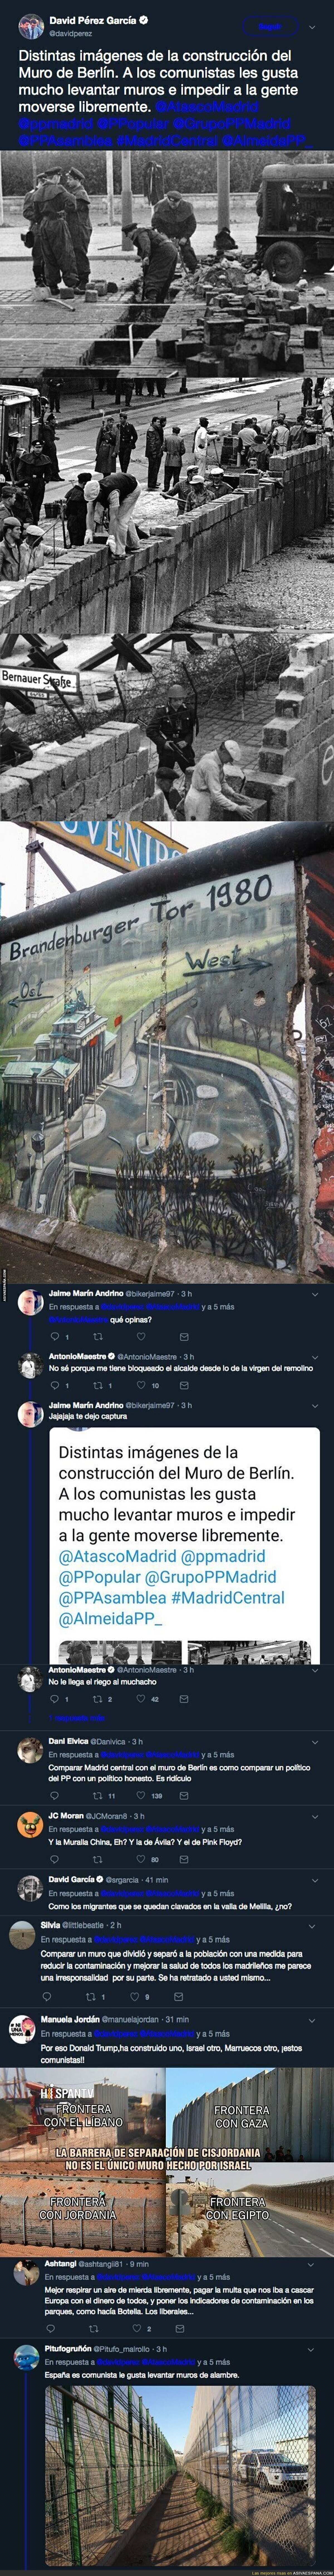 El alcalde de Alcorcón, David Pérez (PP) culpa al comunismo del levantamiento de muros